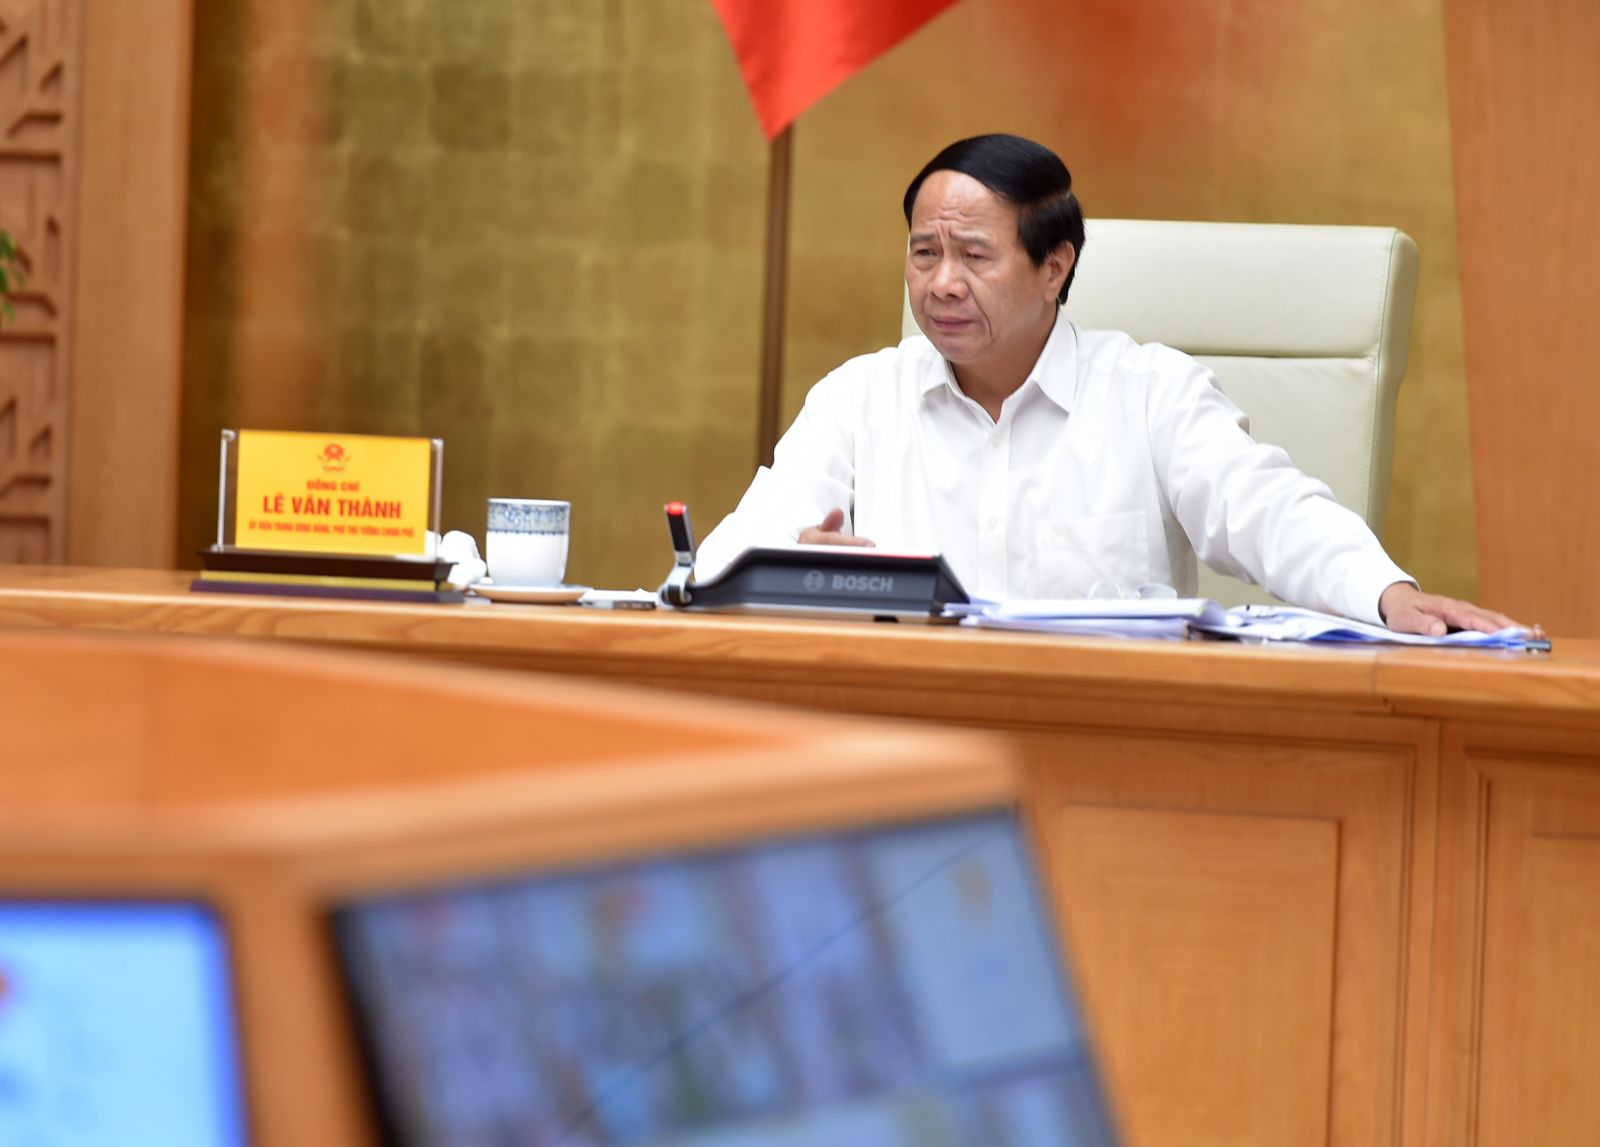 Phó Thủ tướng Lê Văn Thành: Phục hồi sản xuất nhưng tránh để xảy ra ổ dịch trong khu công nghiệp